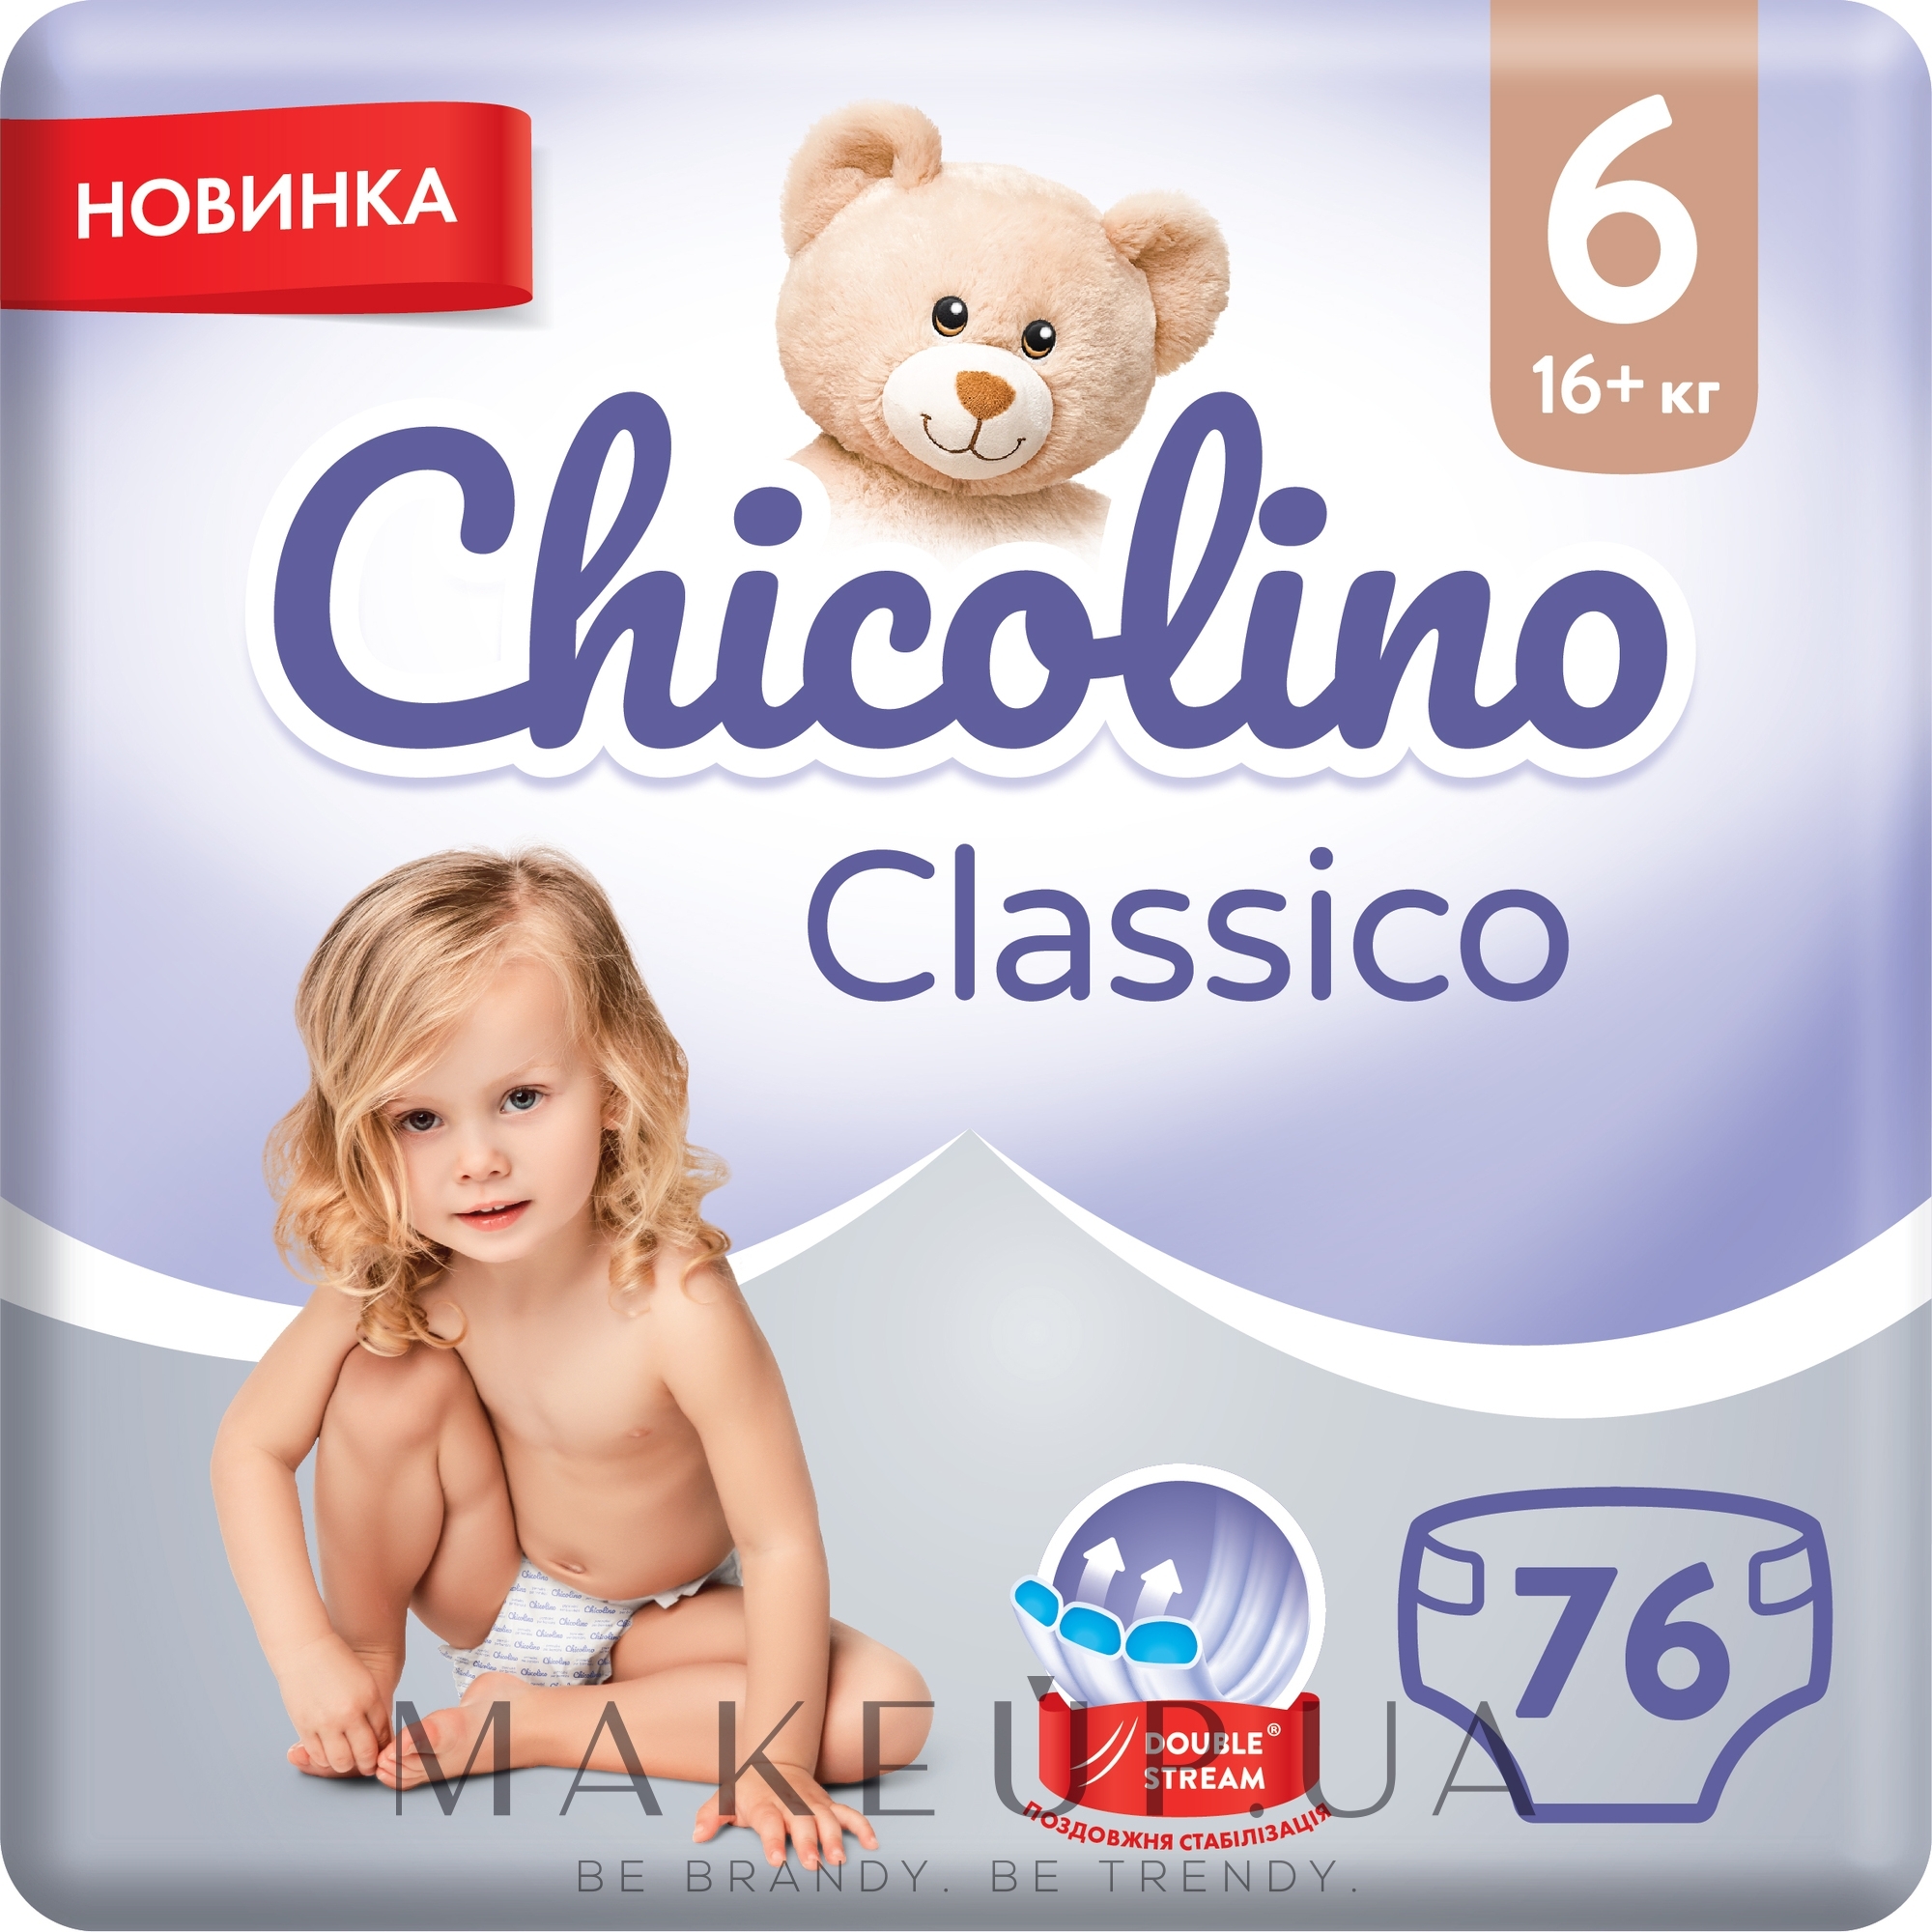 Дитячі підгузки "Classico", 16+ кг, розмір 6, 76 шт. - Chicolino — фото 76шт